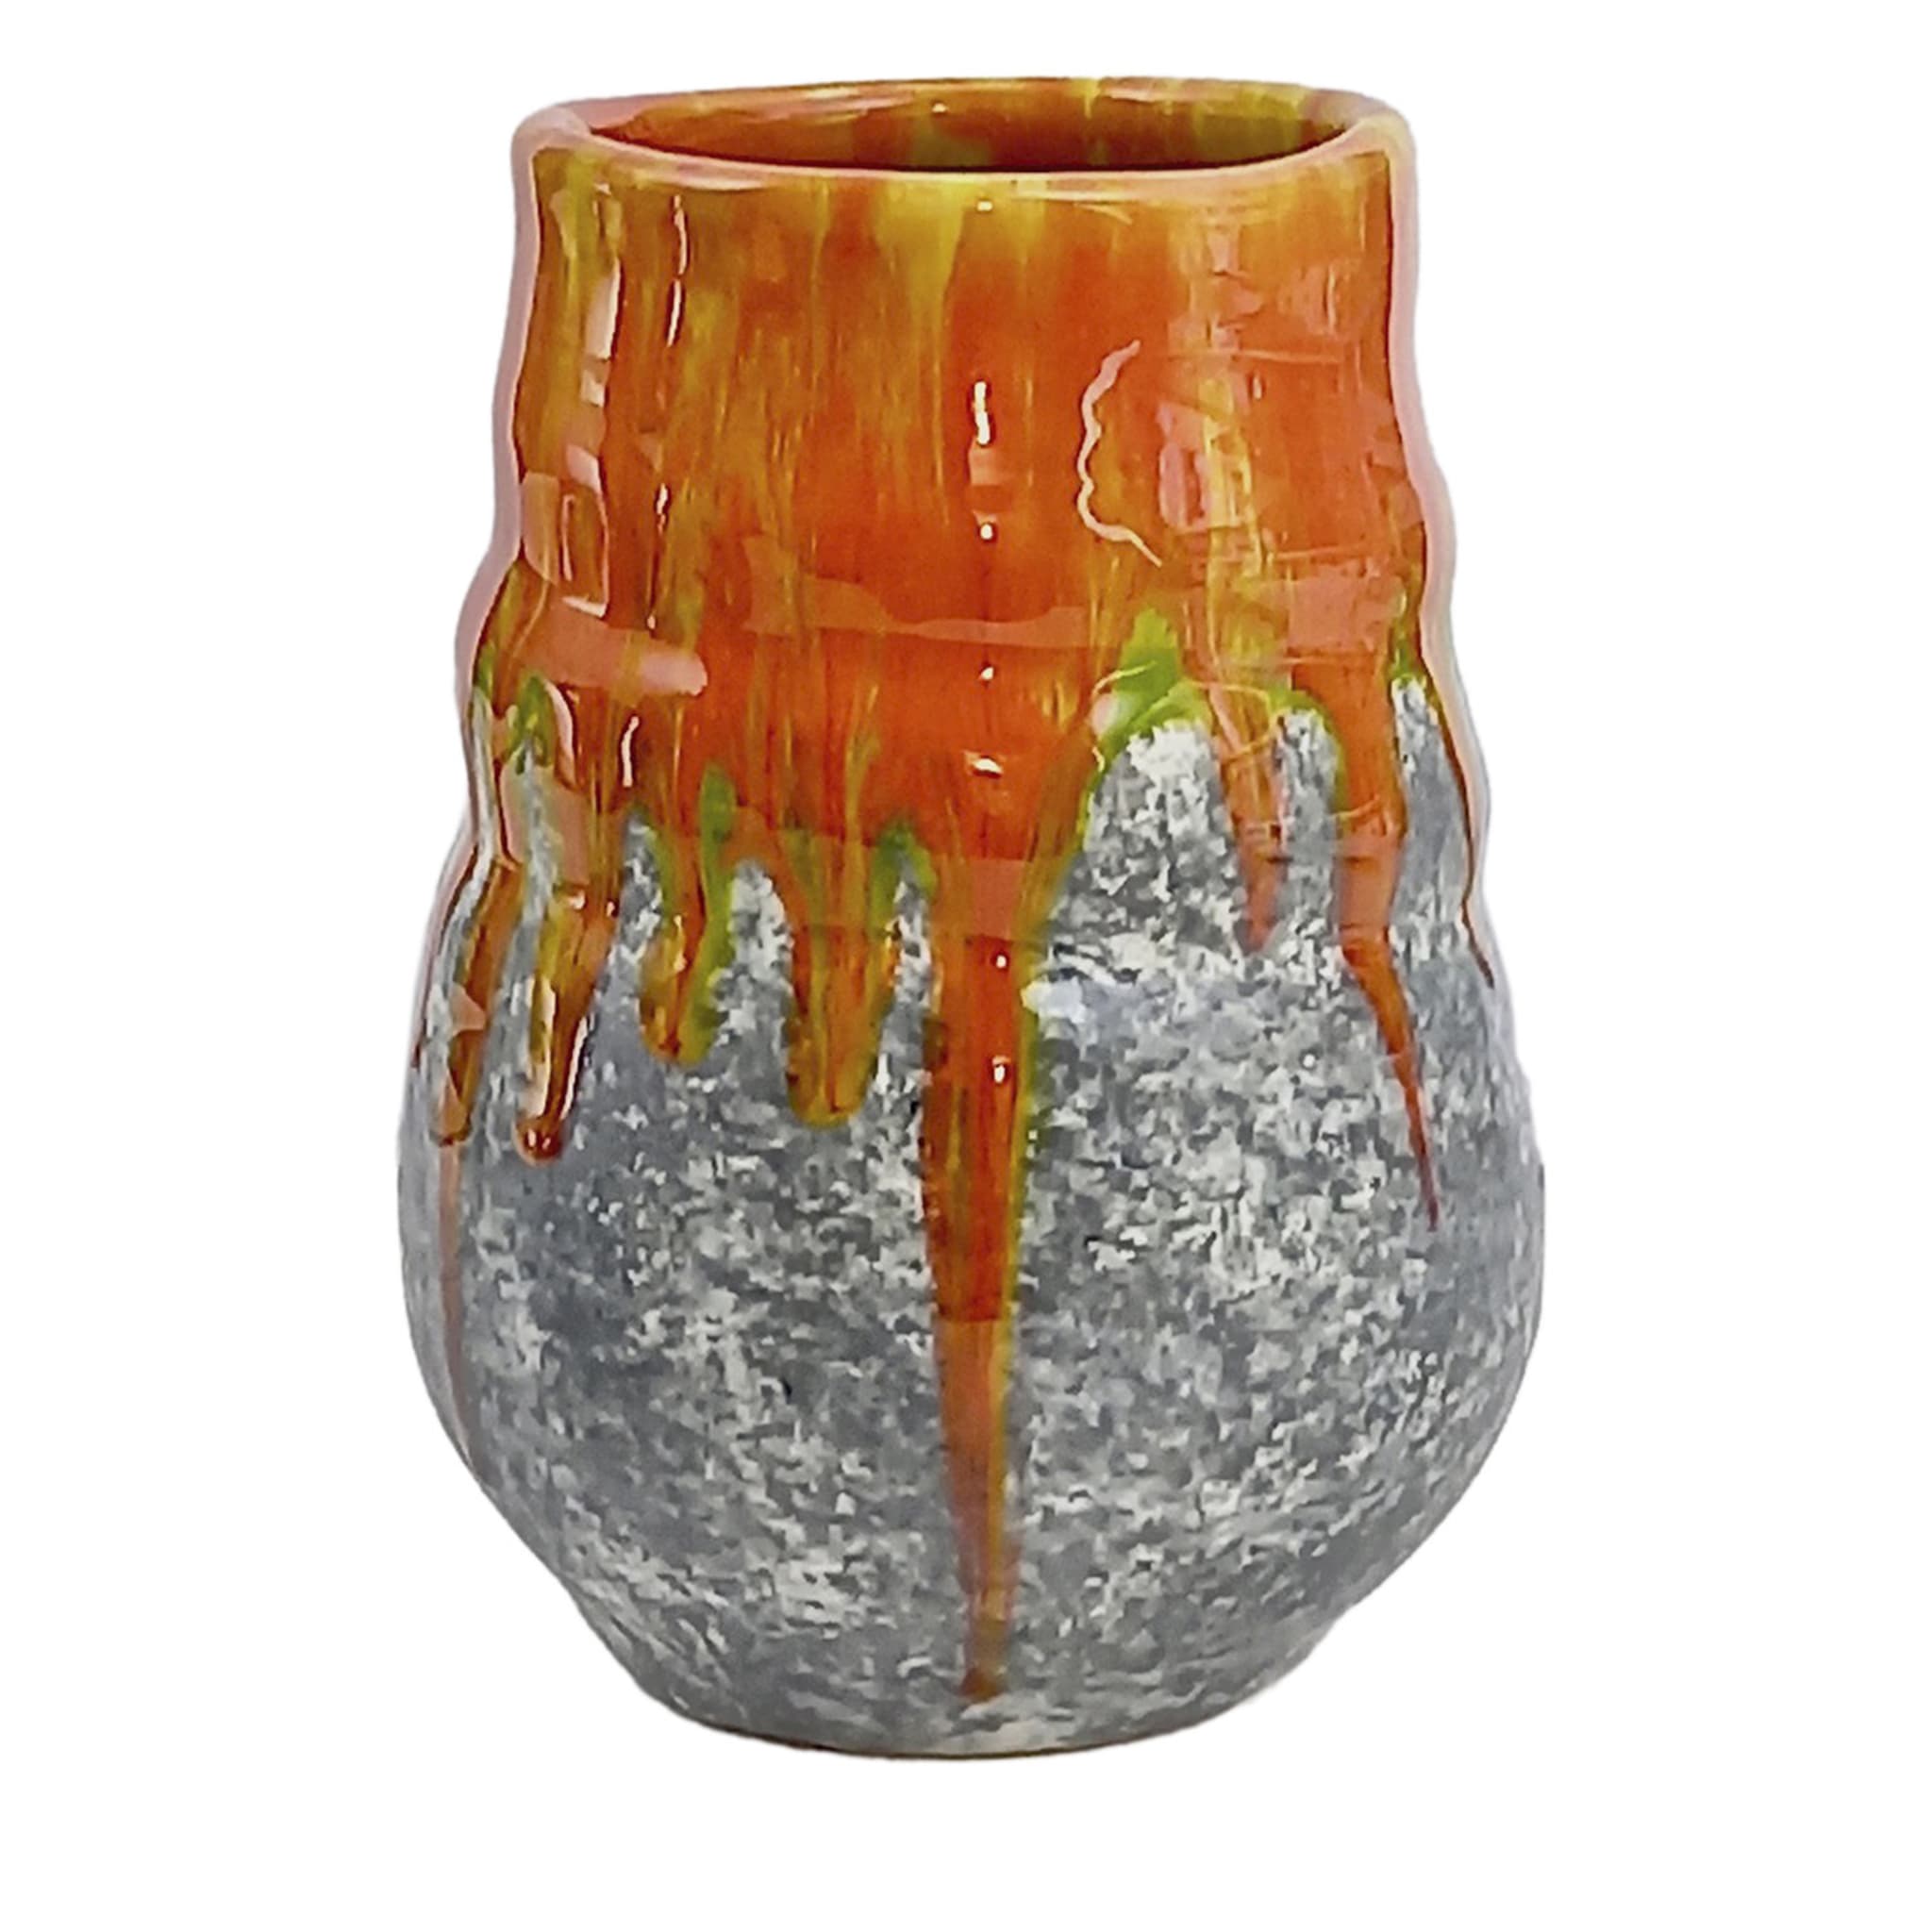 Vase en pierre de feu verte #2 - Vue principale